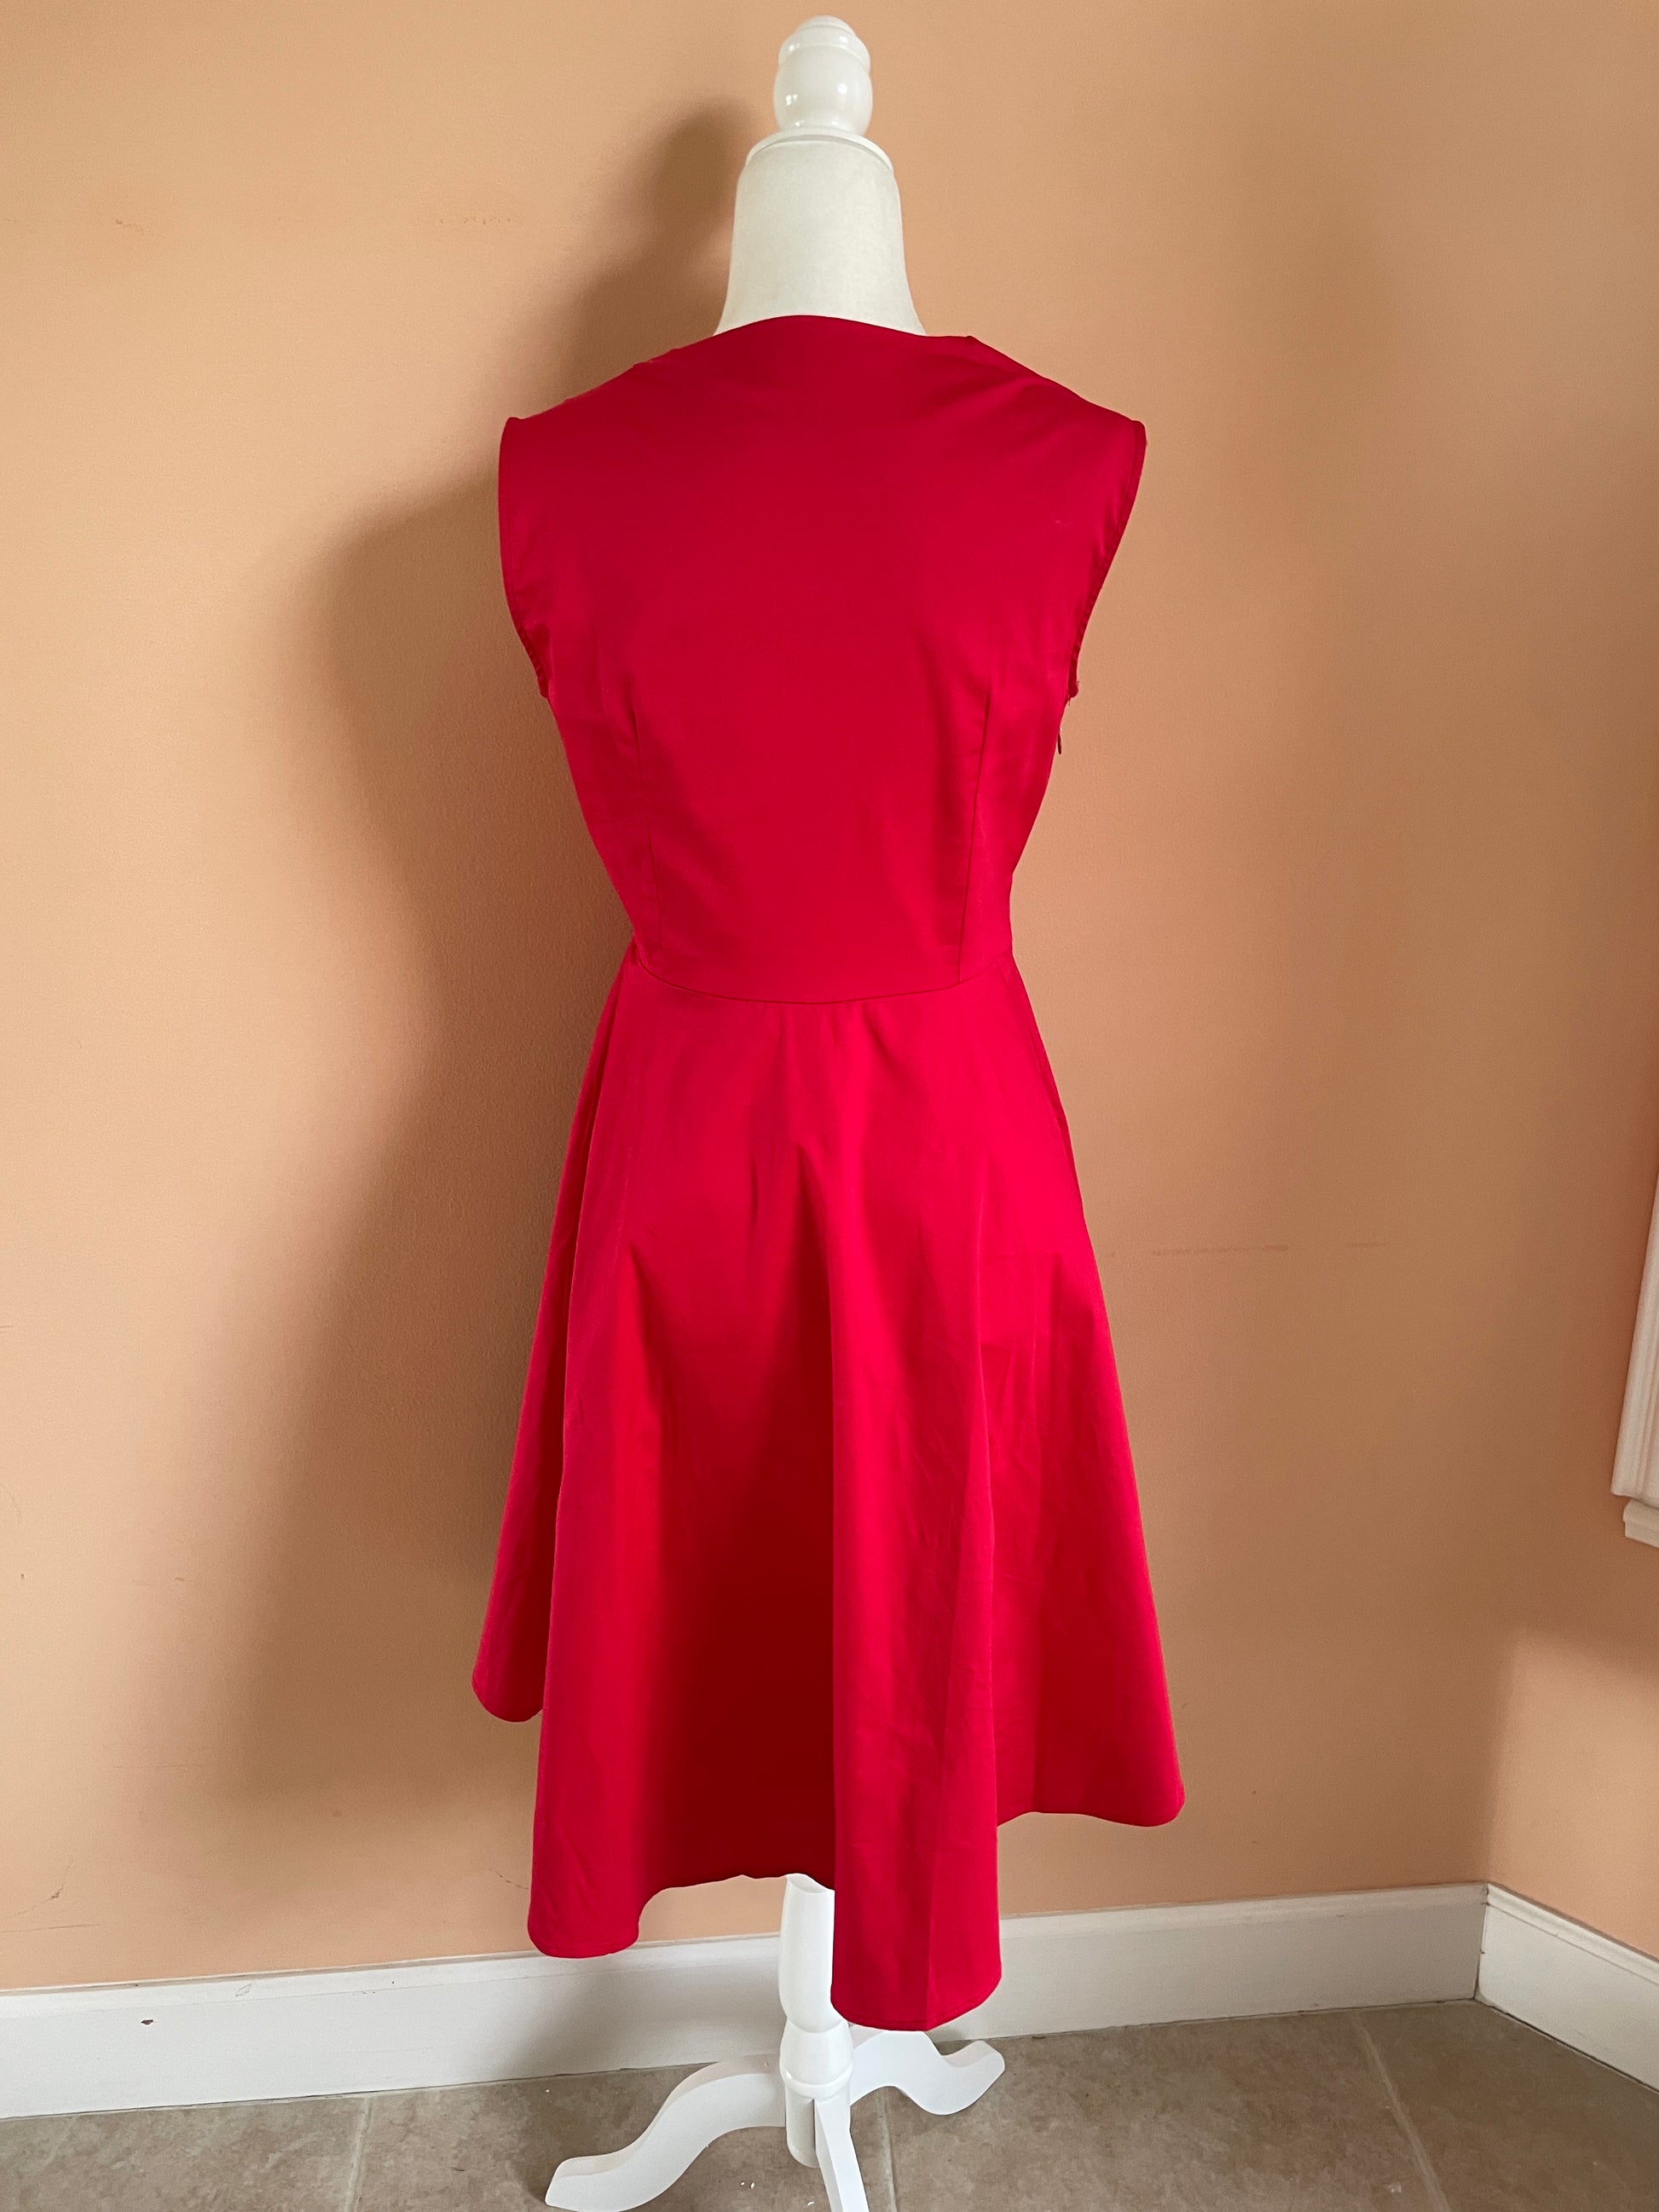  Girl in Red 2000’s Sleeveless Black Polka Dot Cotton Dress M